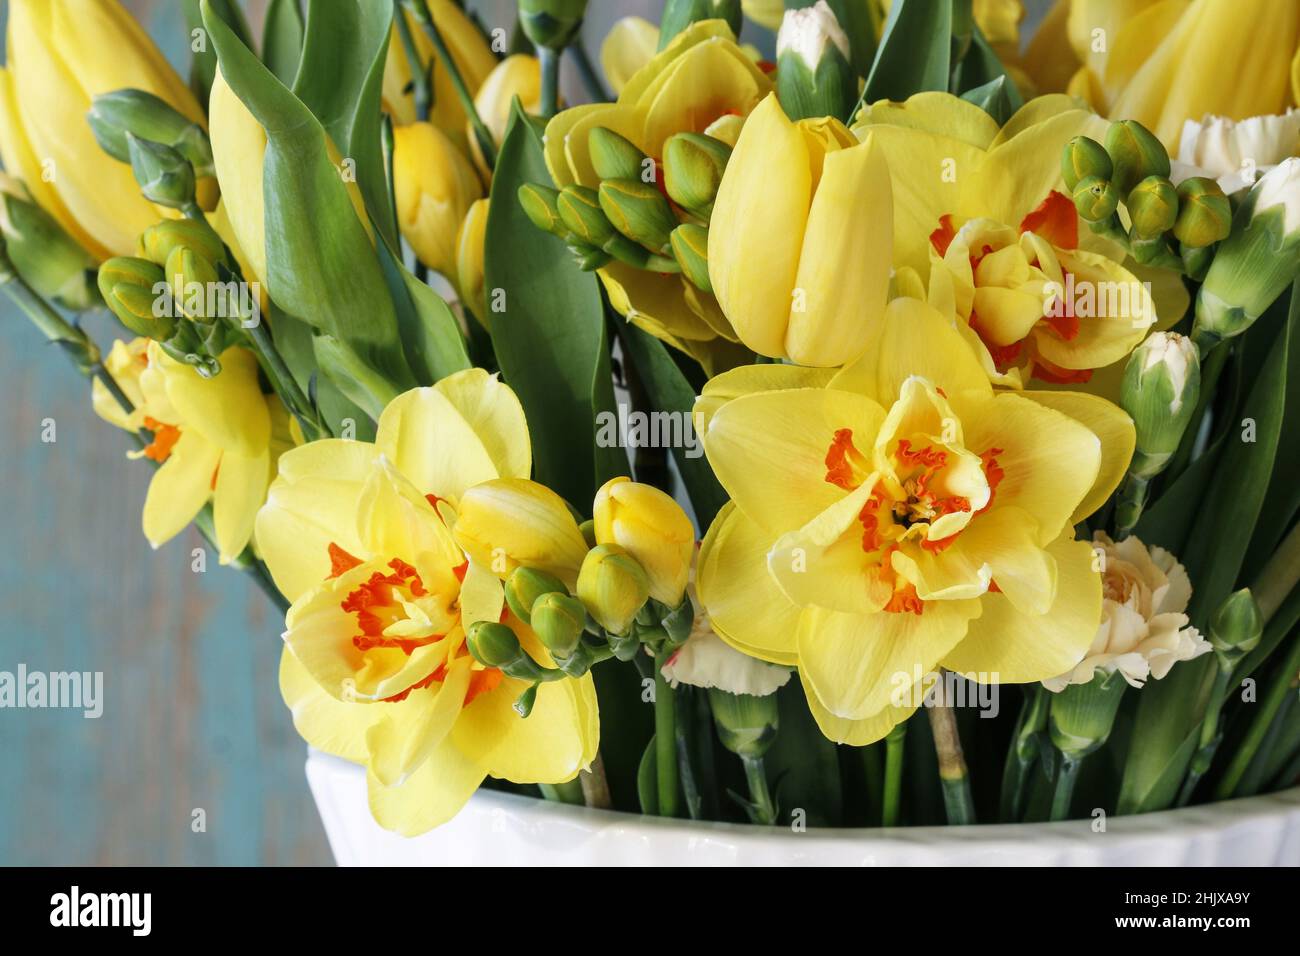 Bouquet de printemps avec tulipes jaunes, œillets et jonquilles. Fleurs fraîches dans un vase blanc. Banque D'Images